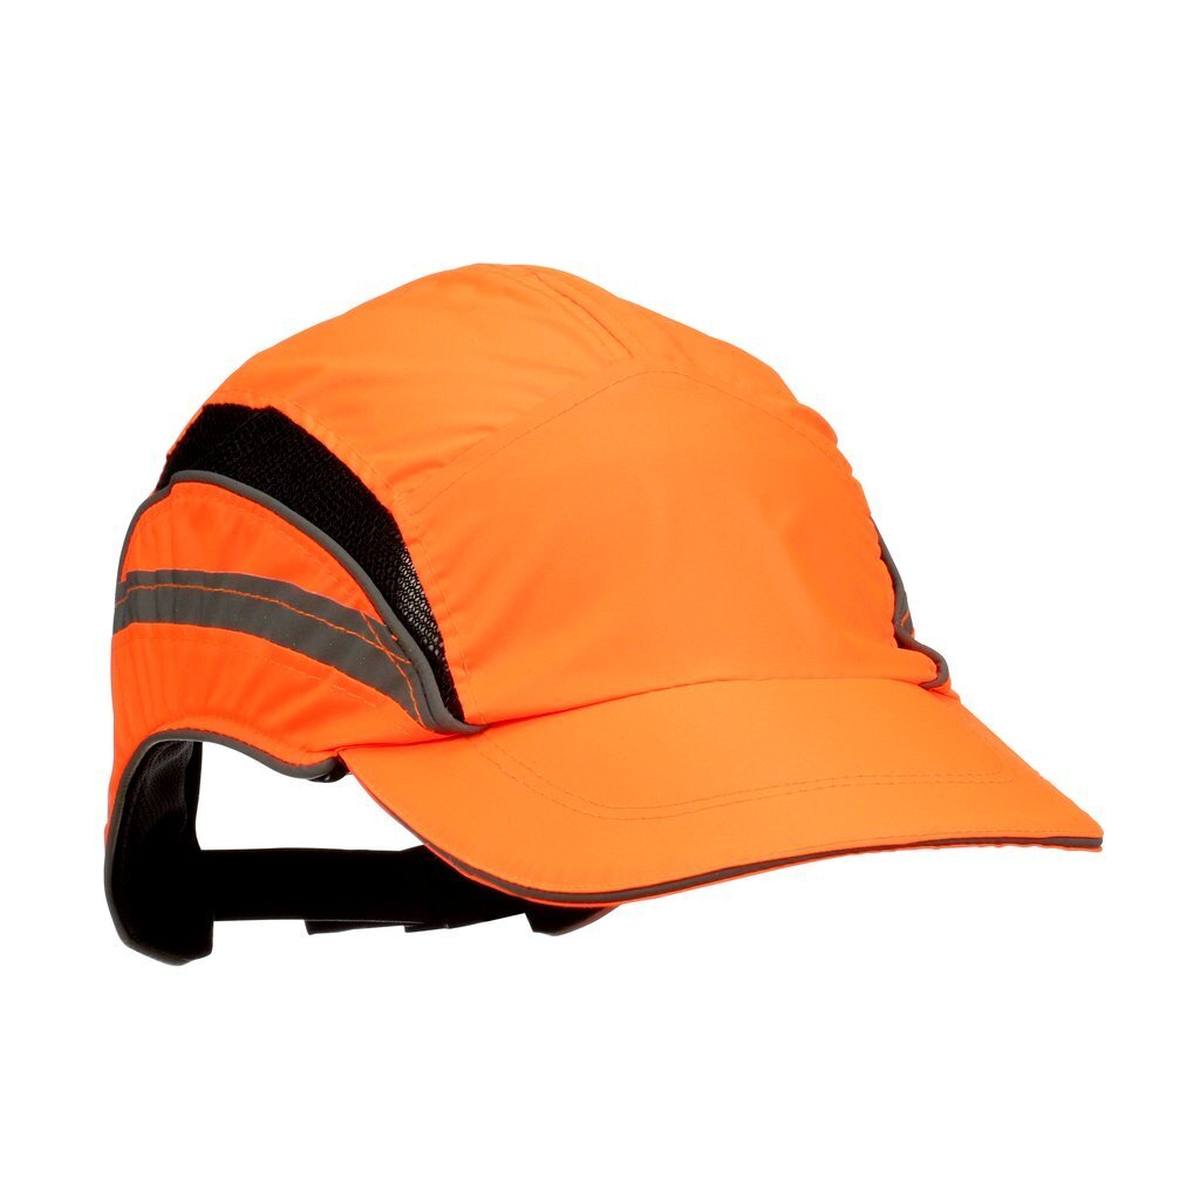 3M Scott First Base 3 Classic - bump cap in signal colour orange - standard peak 70 mm, EN812